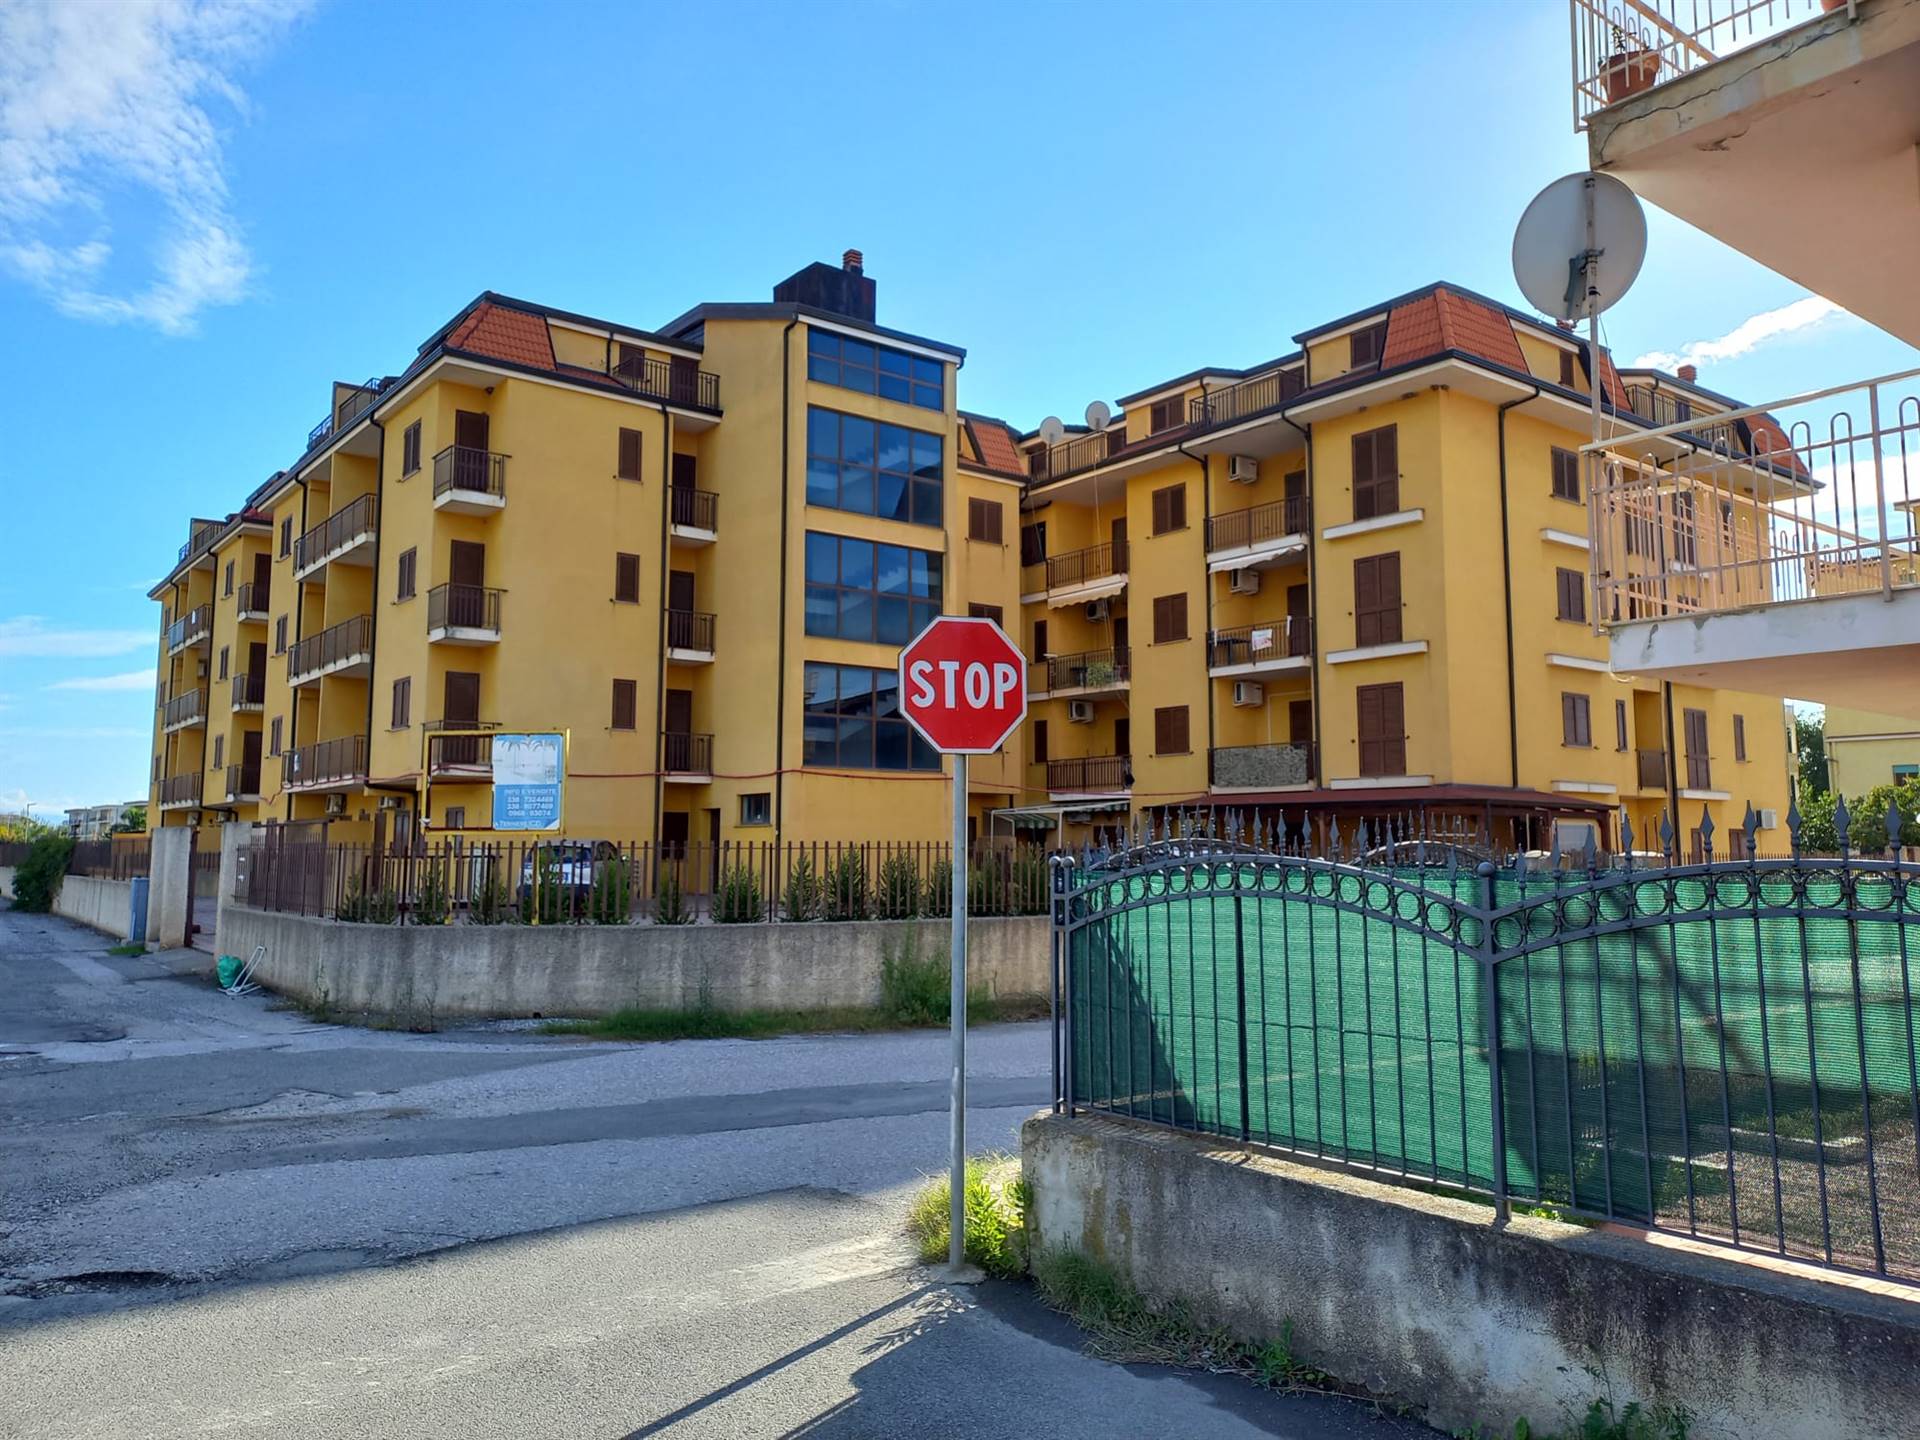 Appartamento in vendita a Nocera Terinese, 4 locali, zona Località: MARINA DI NOCERA TERINESE, prezzo € 58.000 | CambioCasa.it